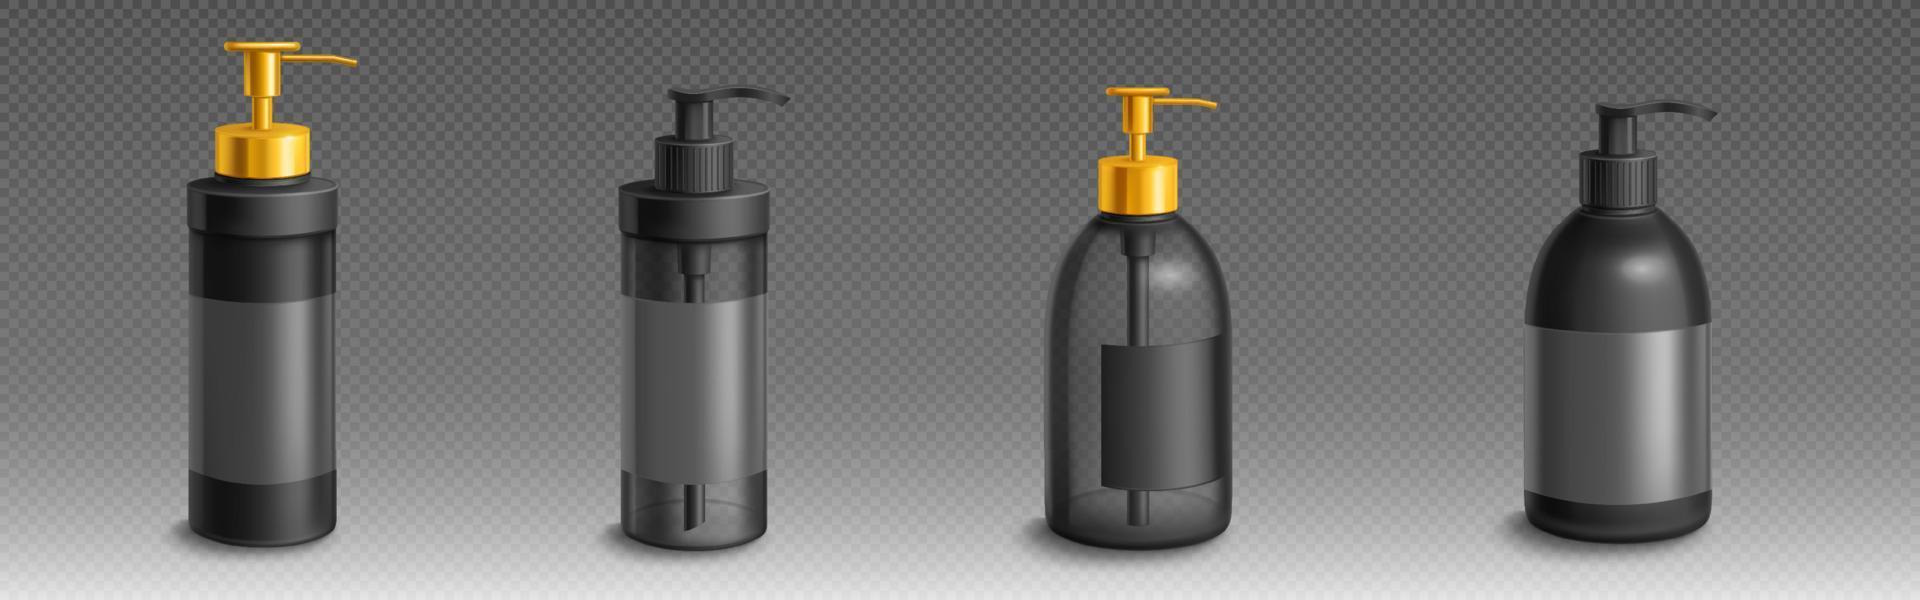 bouteille de savon liquide ou de lotion maquette de vecteur 3d